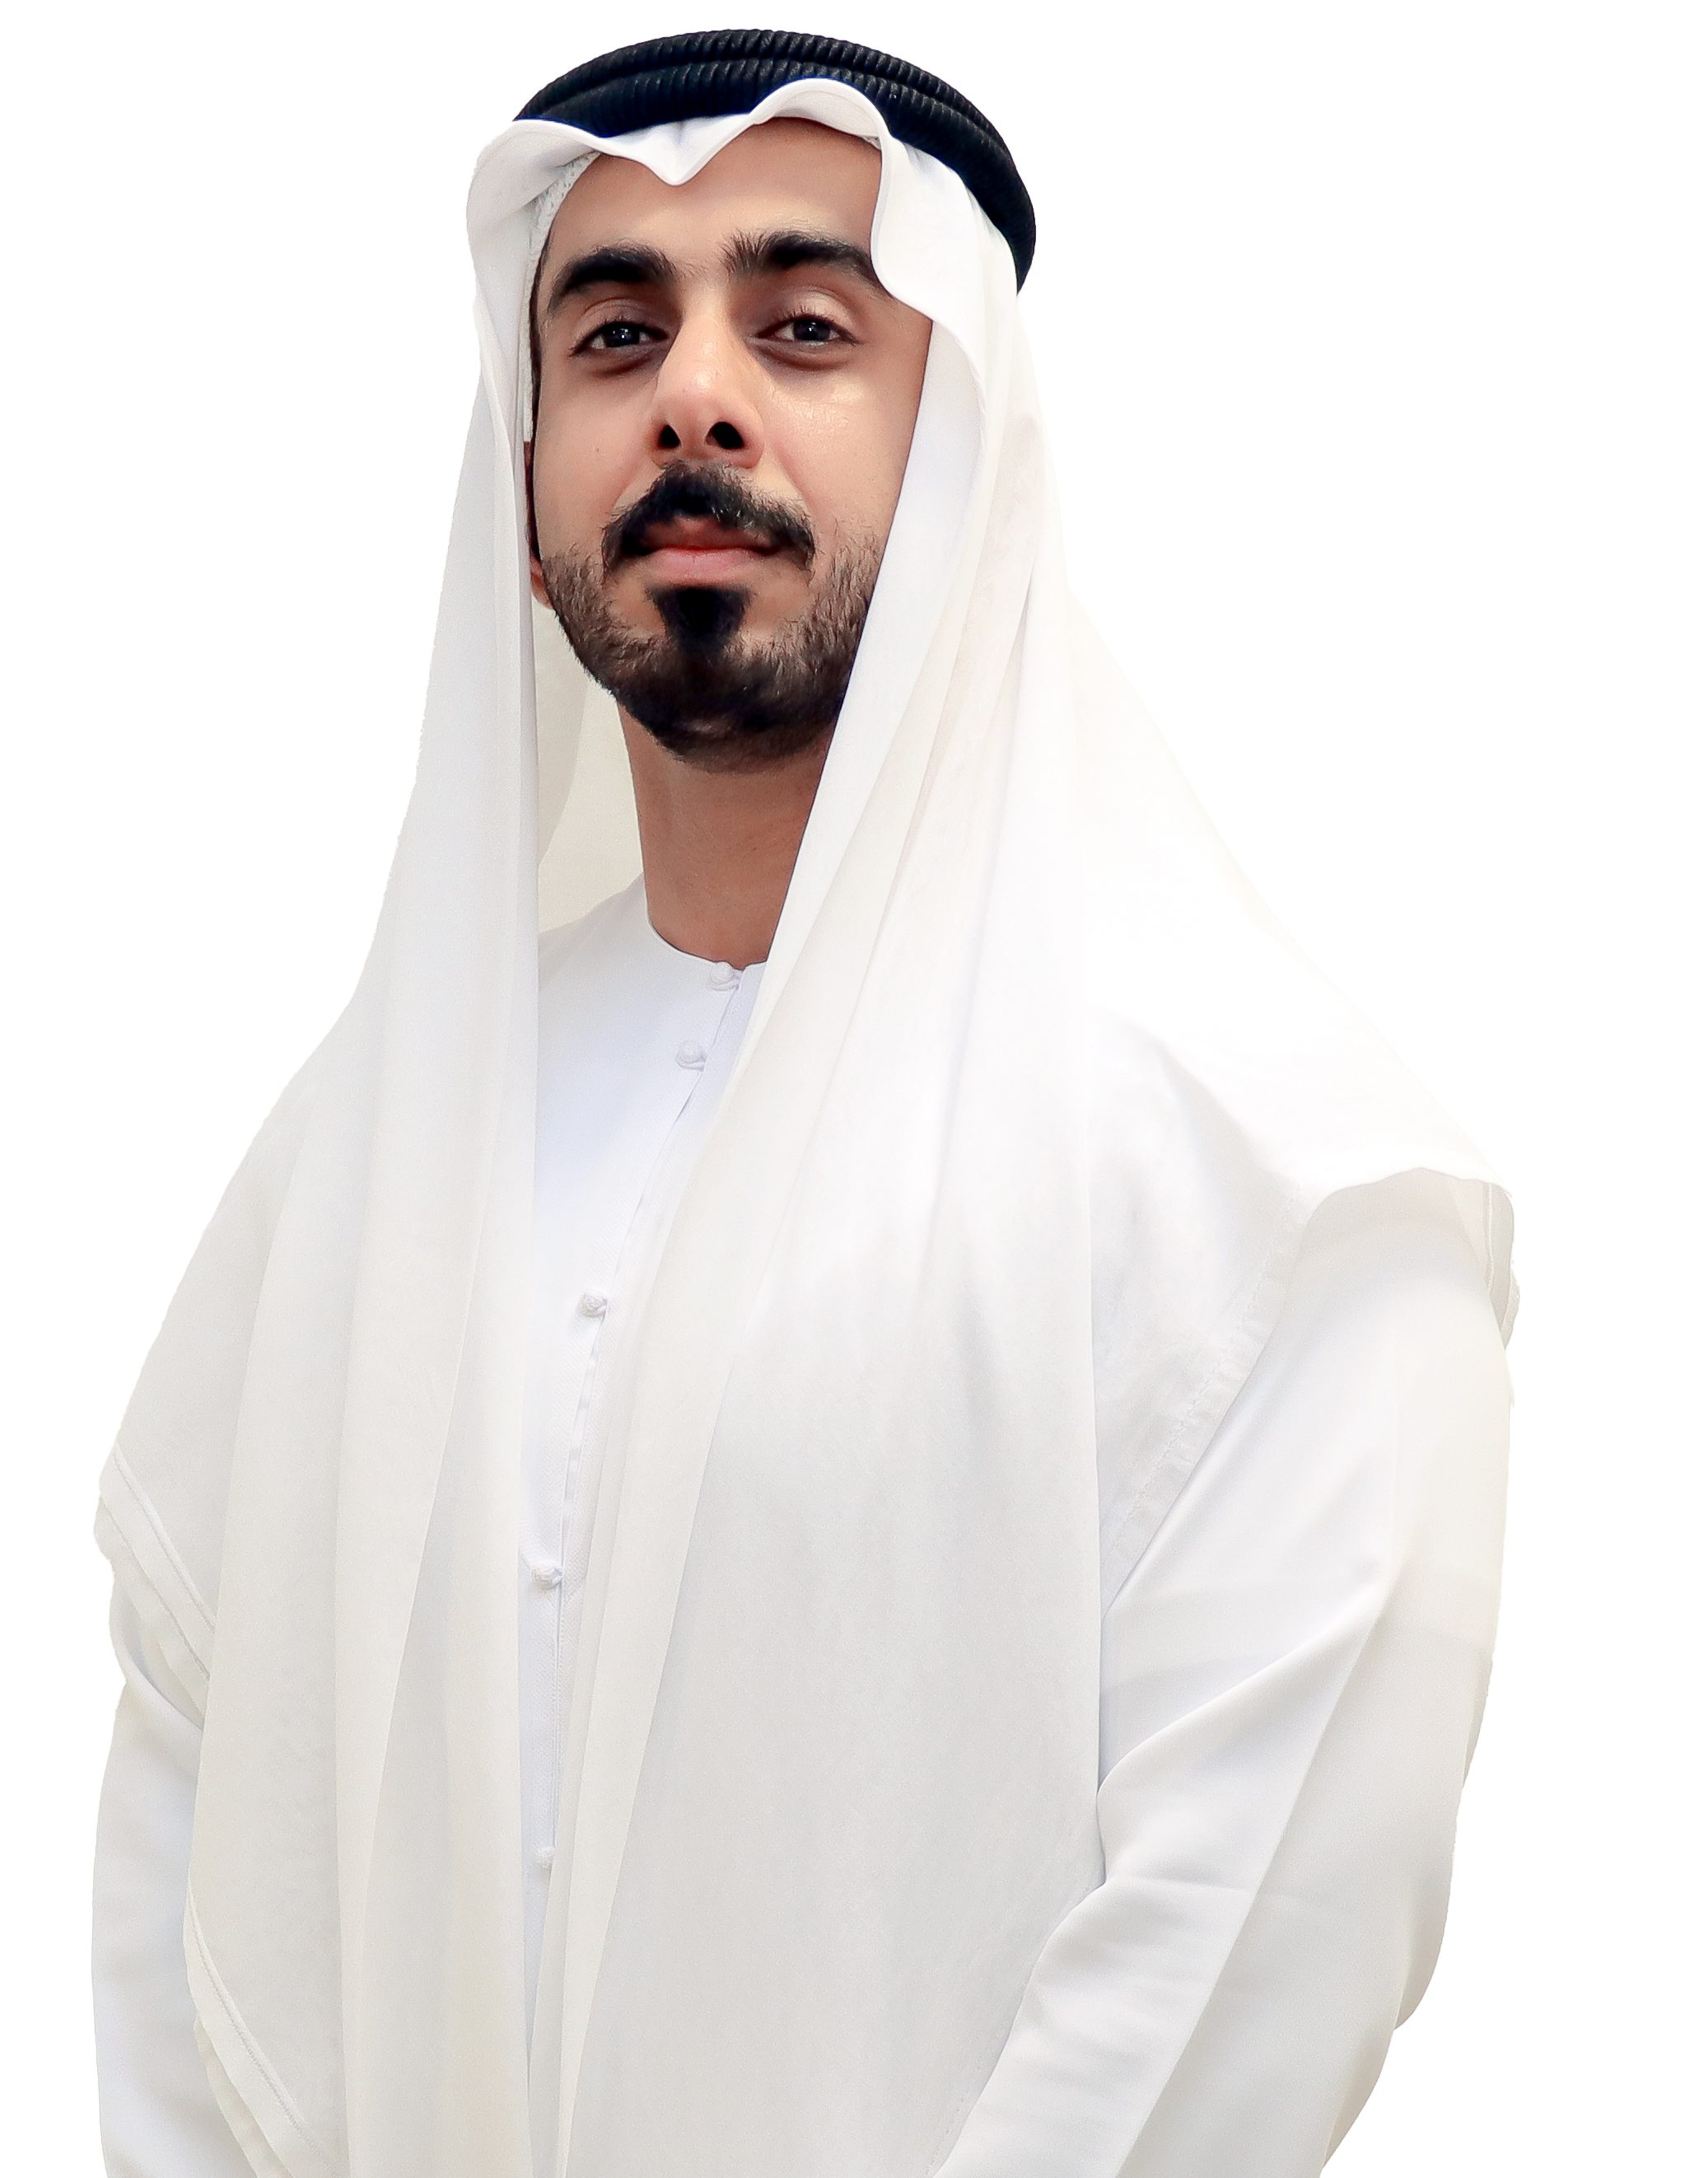 Dr. Hamad Alzaabi